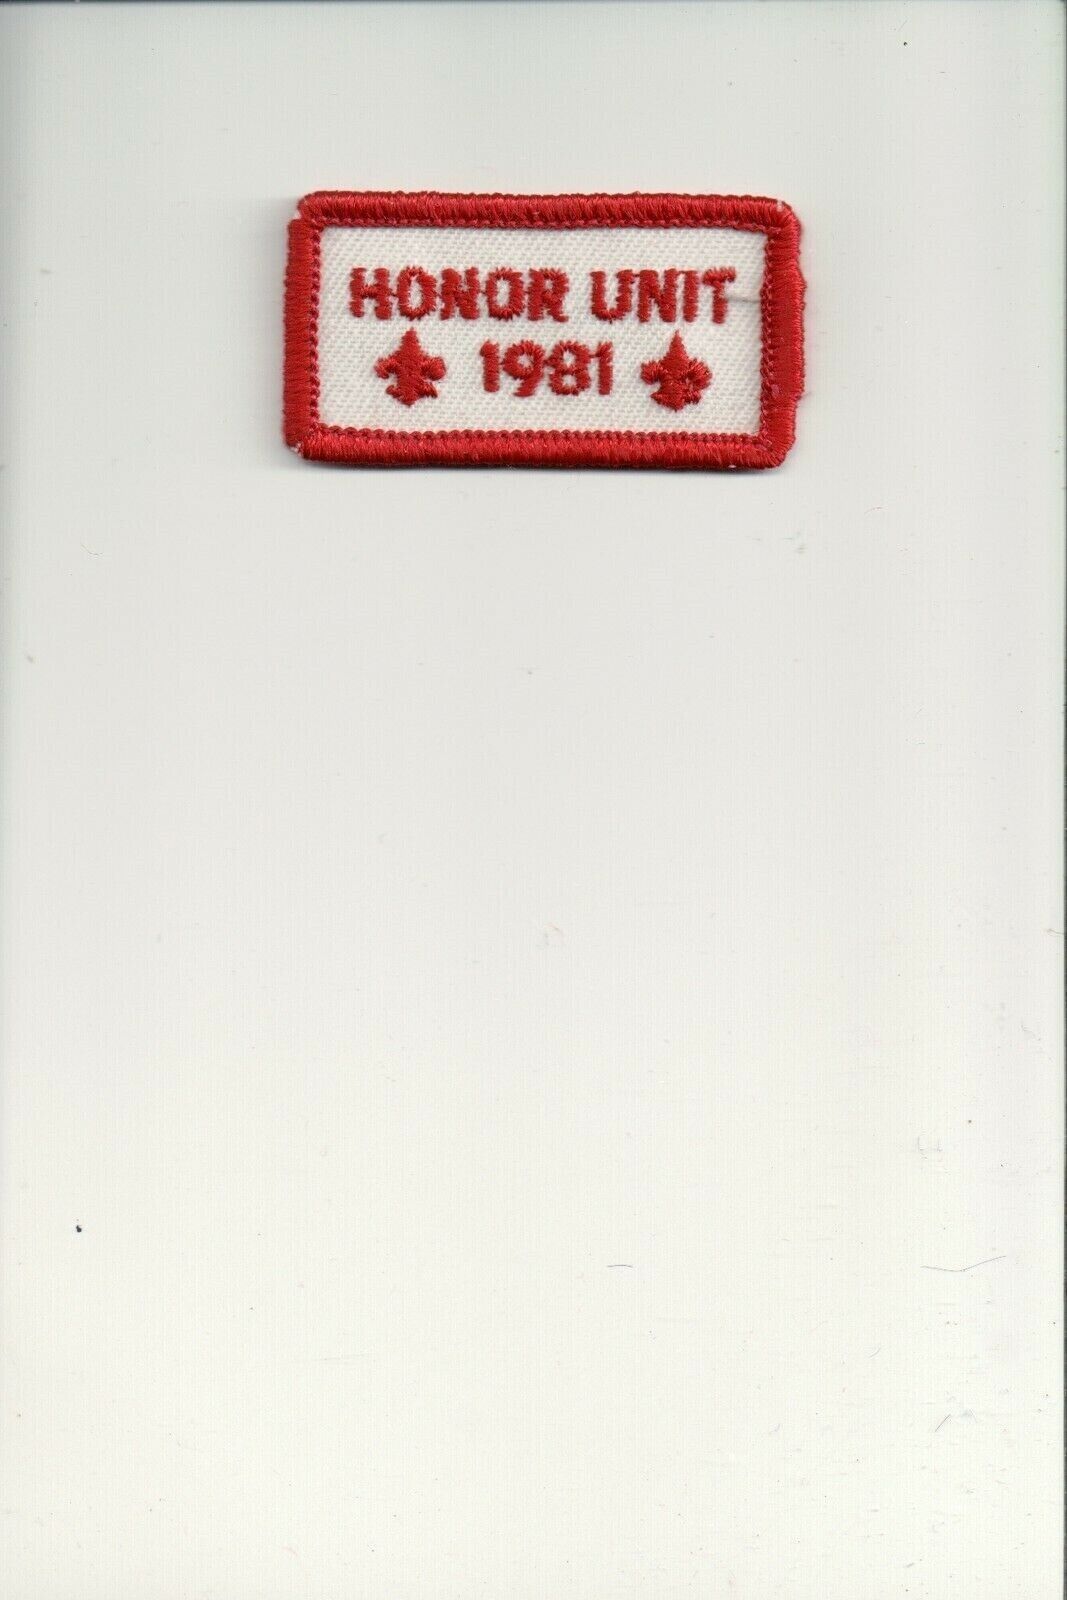 1981 Honor Unit patch